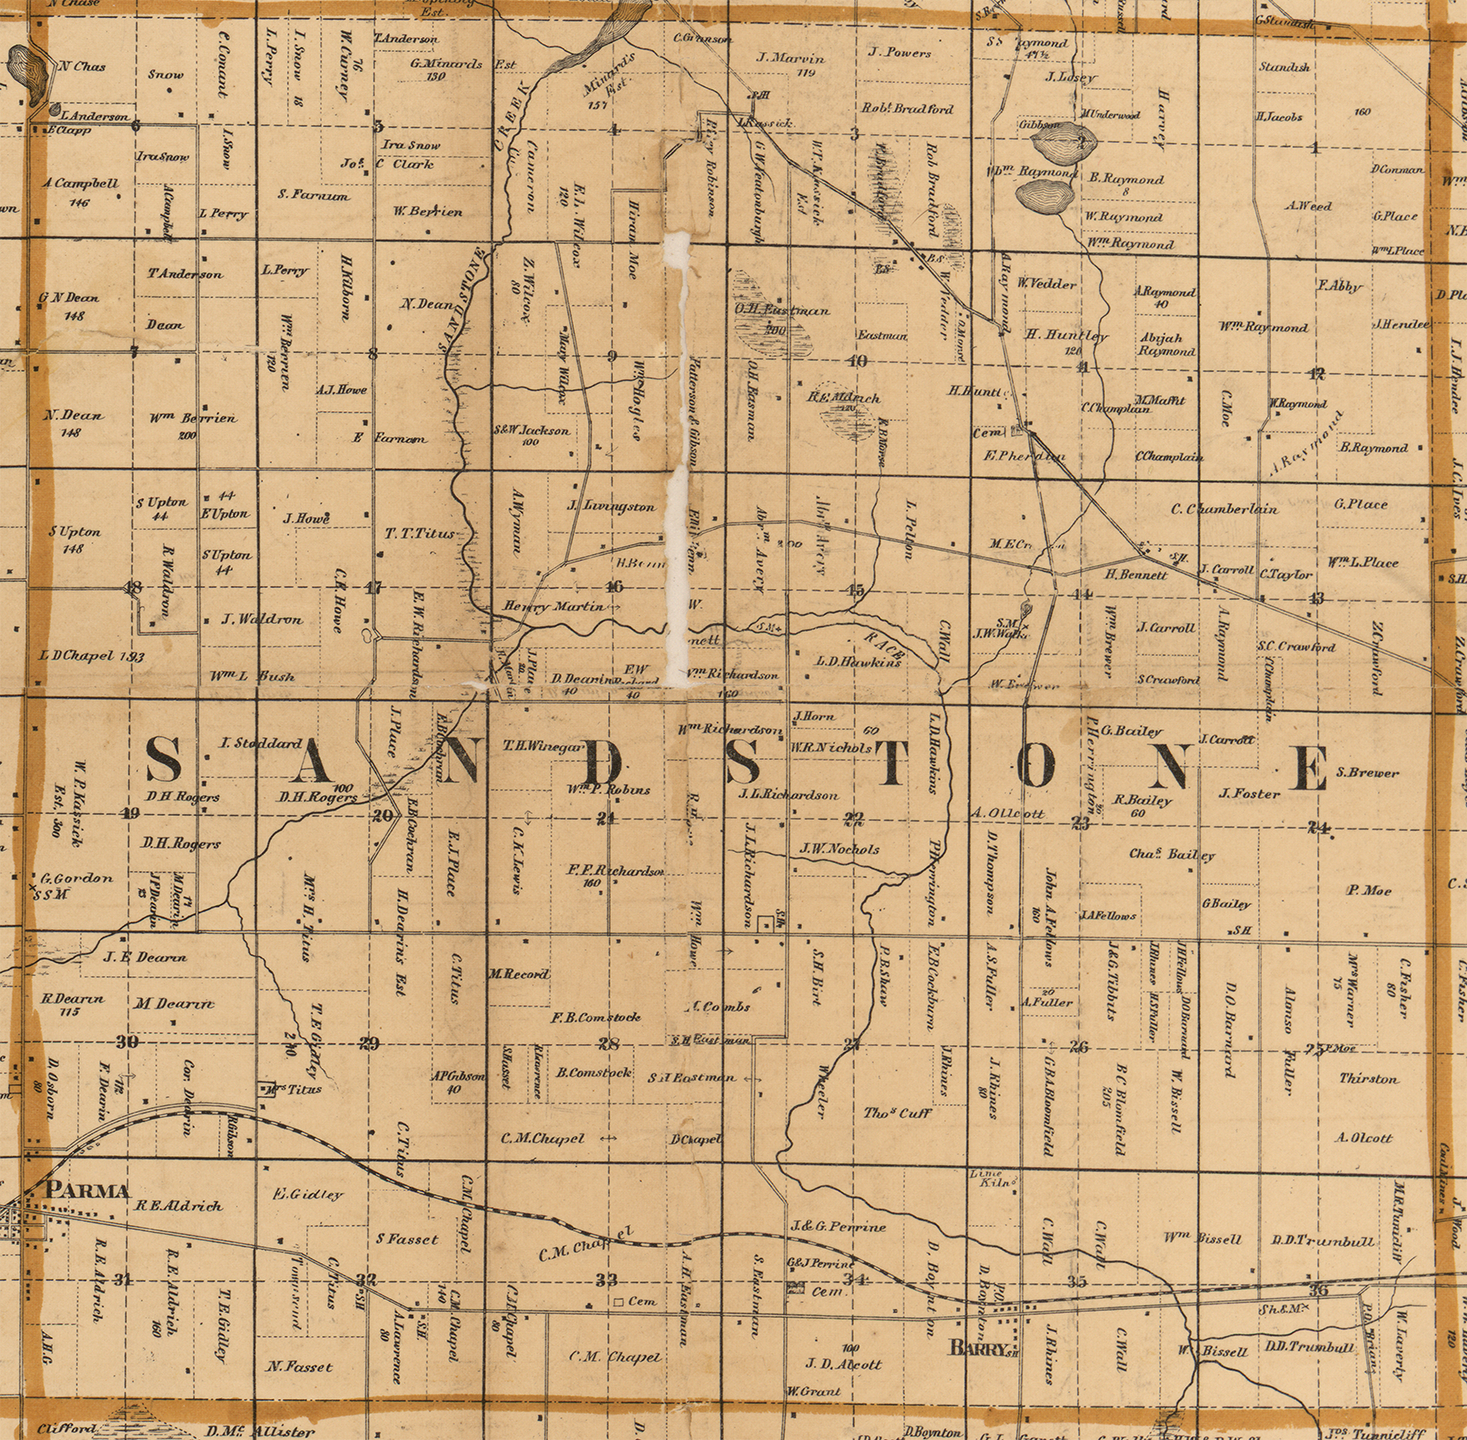 1858 Sandstone Township, Michigan landownership map